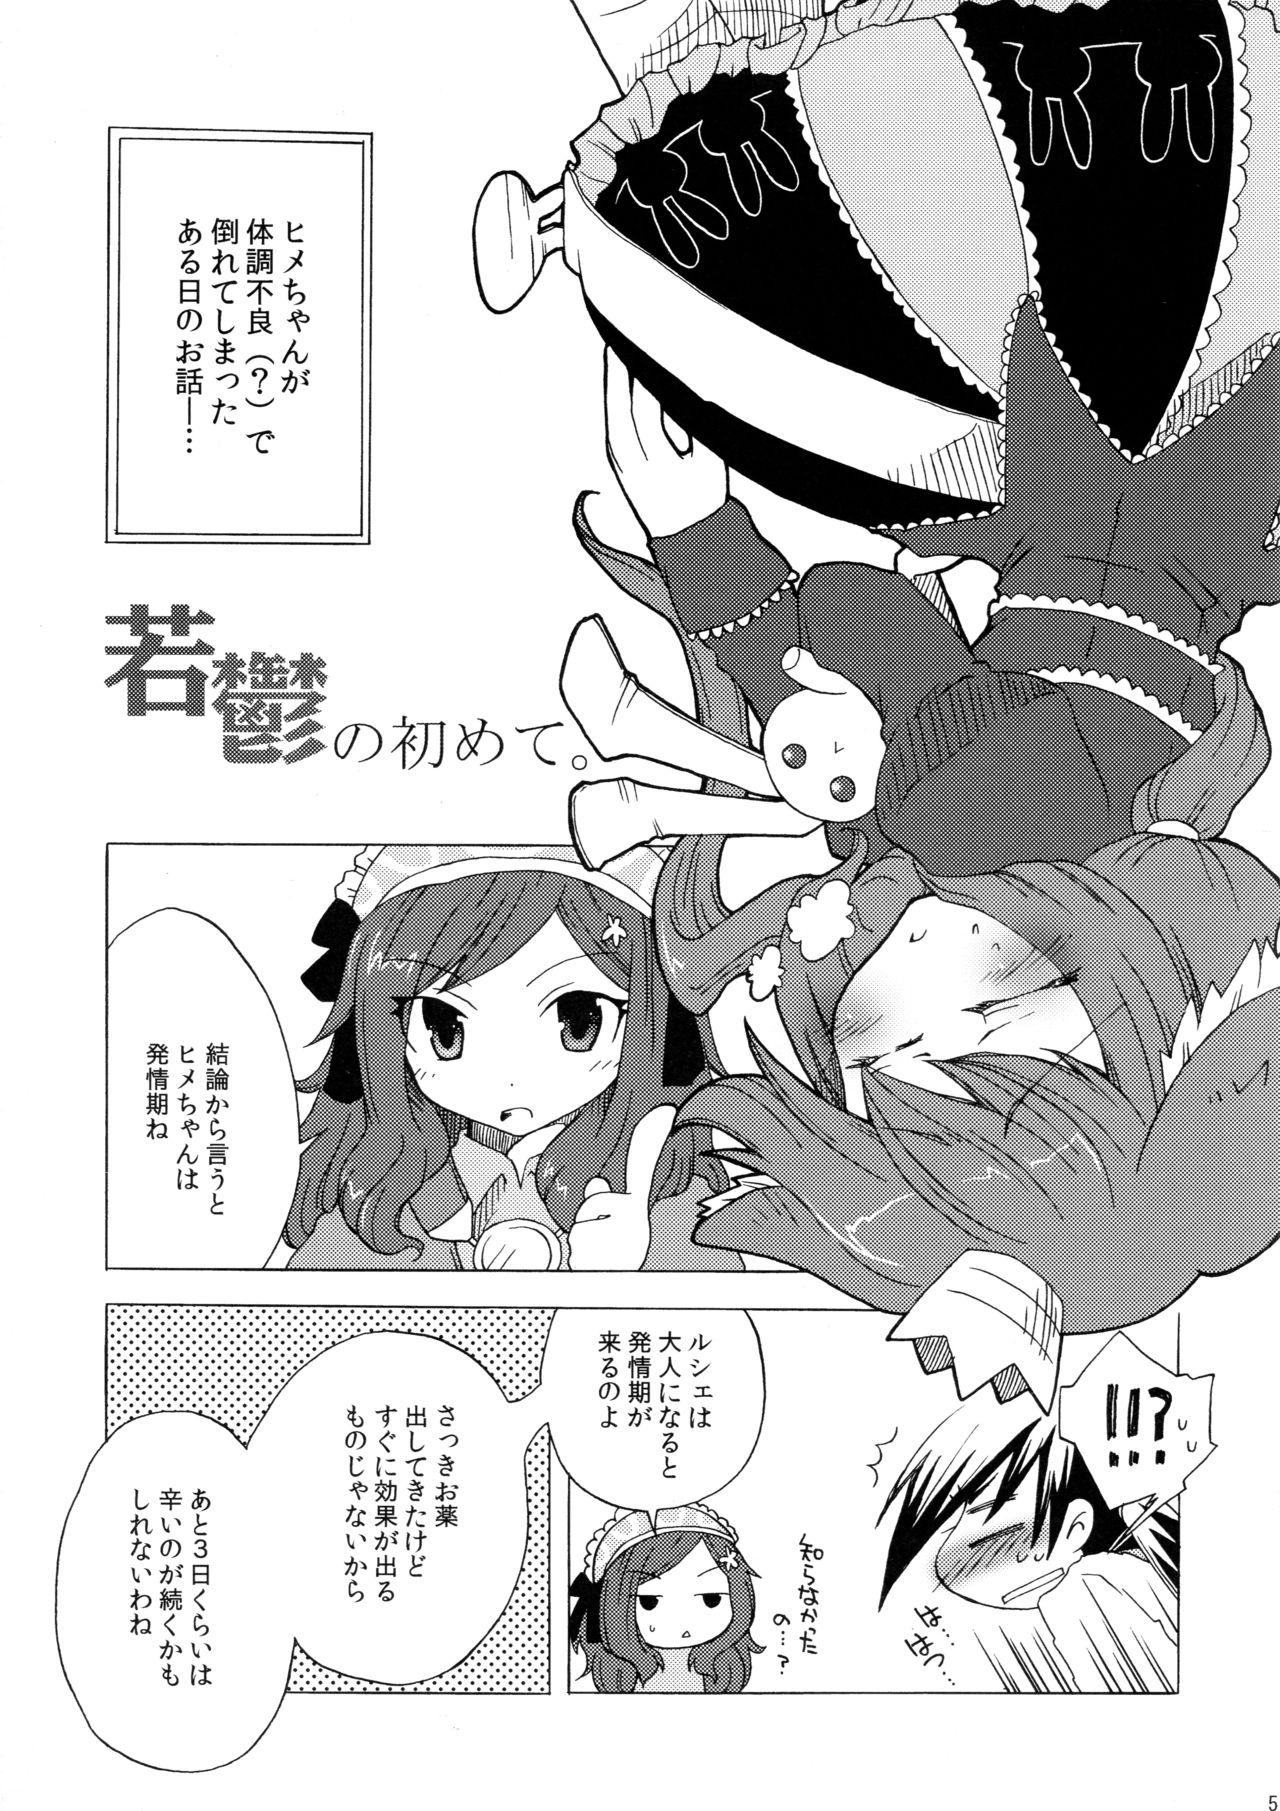 Chastity Waka Utsu no Hajimete. - 7th dragon With - Page 5